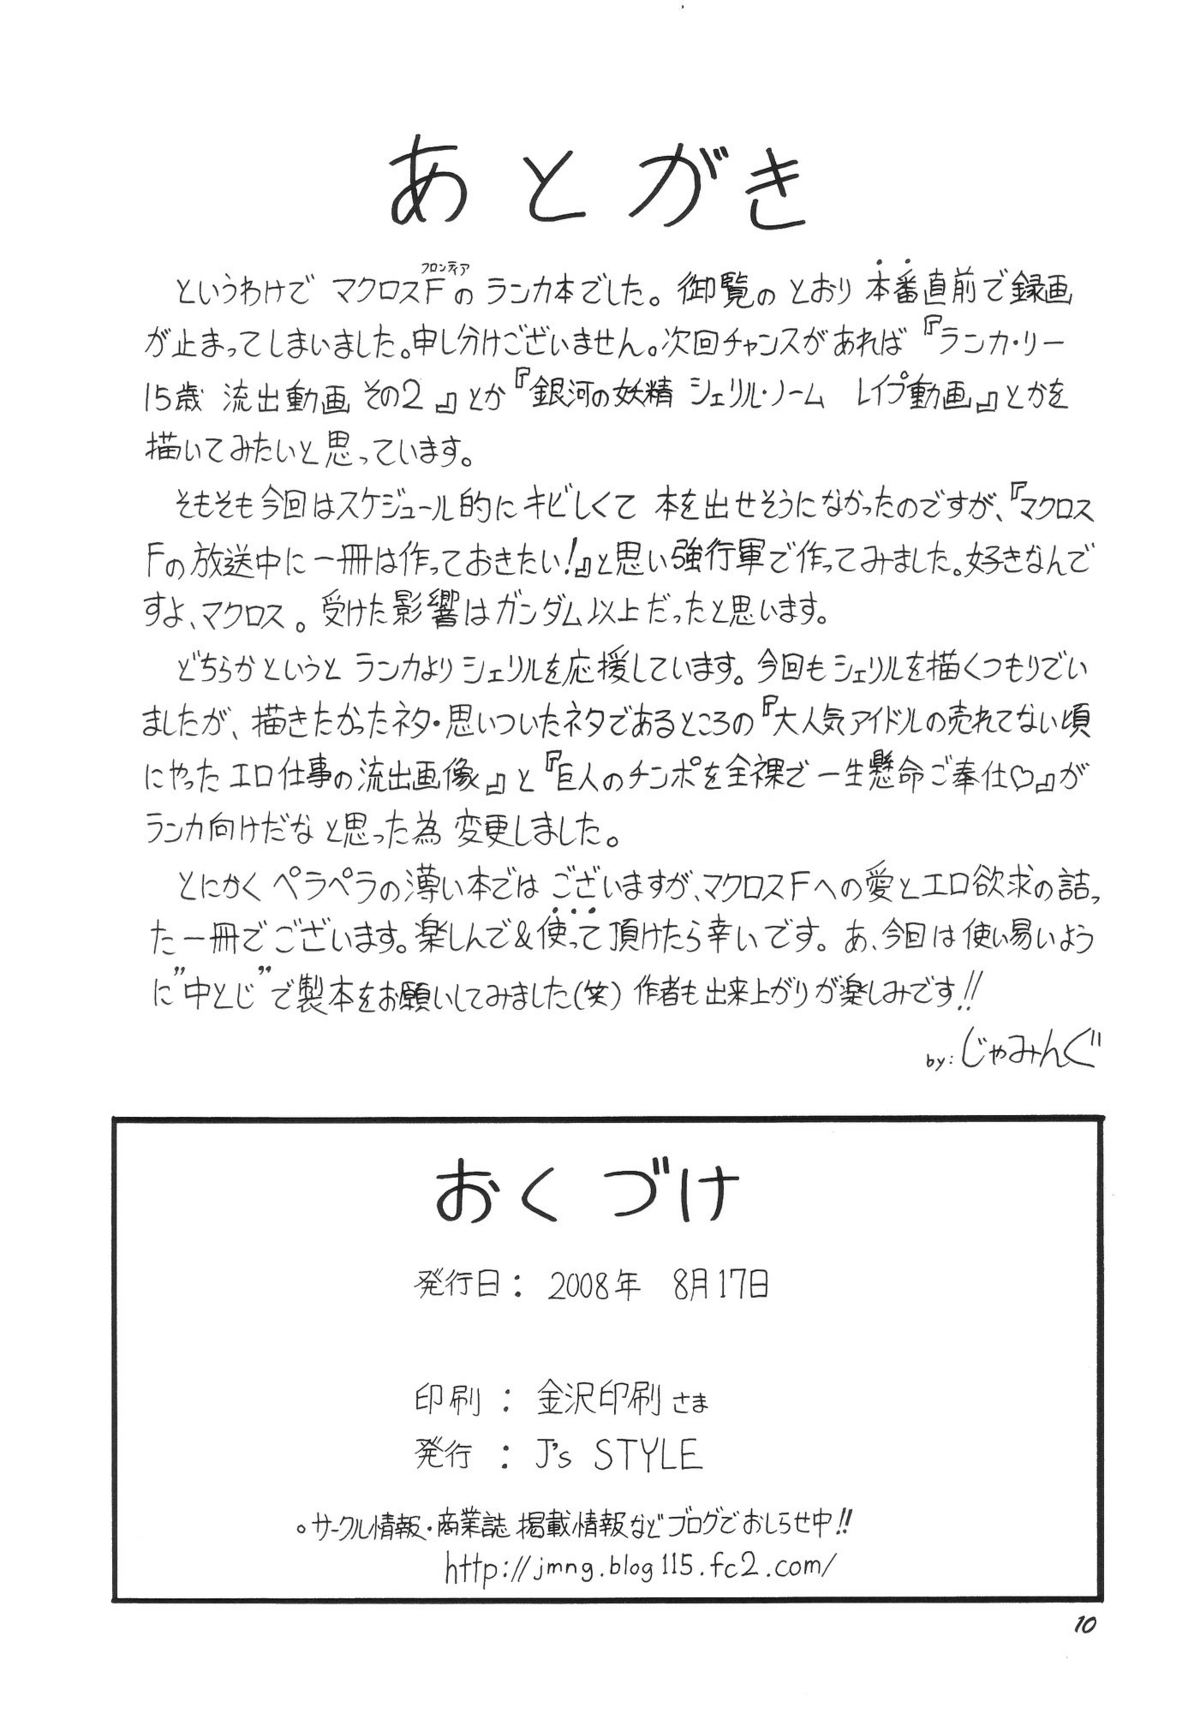 [J&#039;s STYLE(Jamming)] Chouginga Cinderella Ryushutsu Douga!! Ranka Lee 15 Sai (Macross Frontier) [J&#039;s STYLE(じゃみんぐ)] 超銀河シンデレラ流出動画!! ラ○カ・リー15歳 (マクロスF)